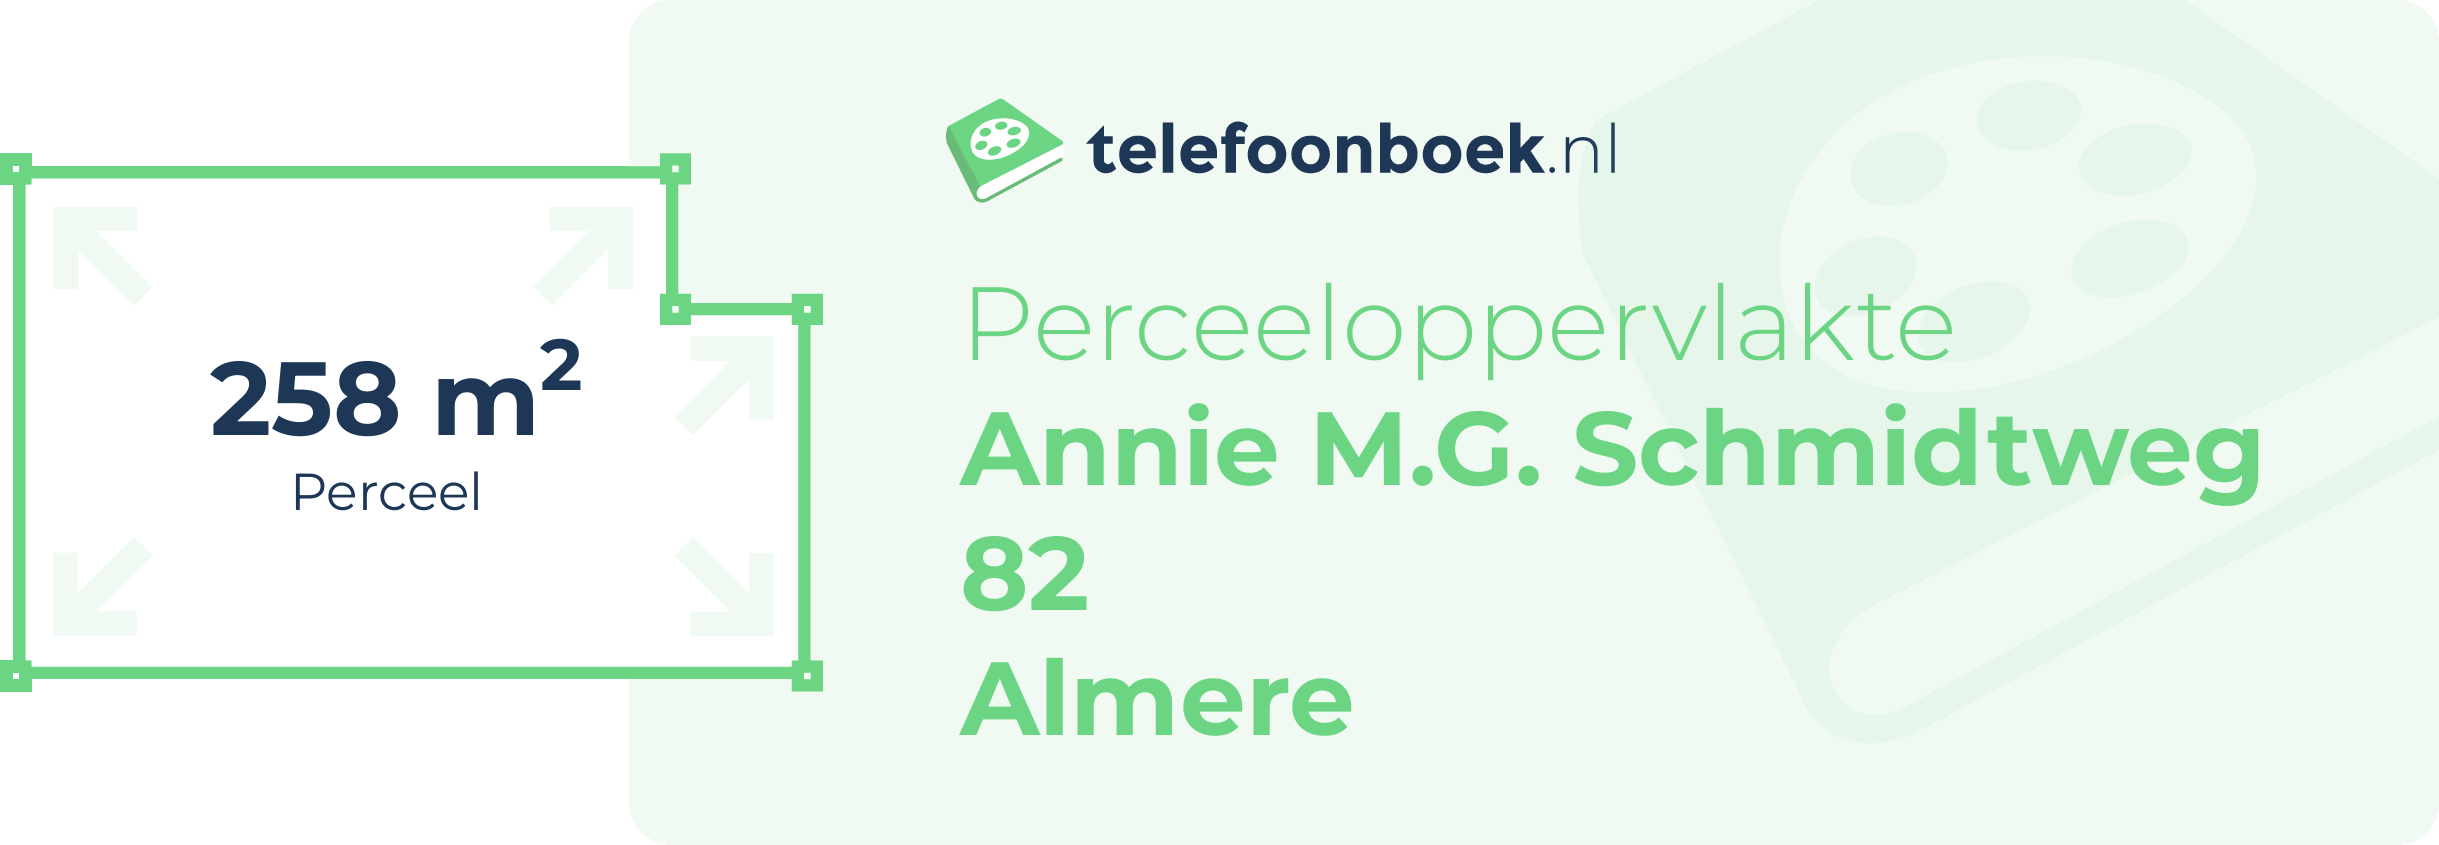 Perceeloppervlakte Annie M.G. Schmidtweg 82 Almere